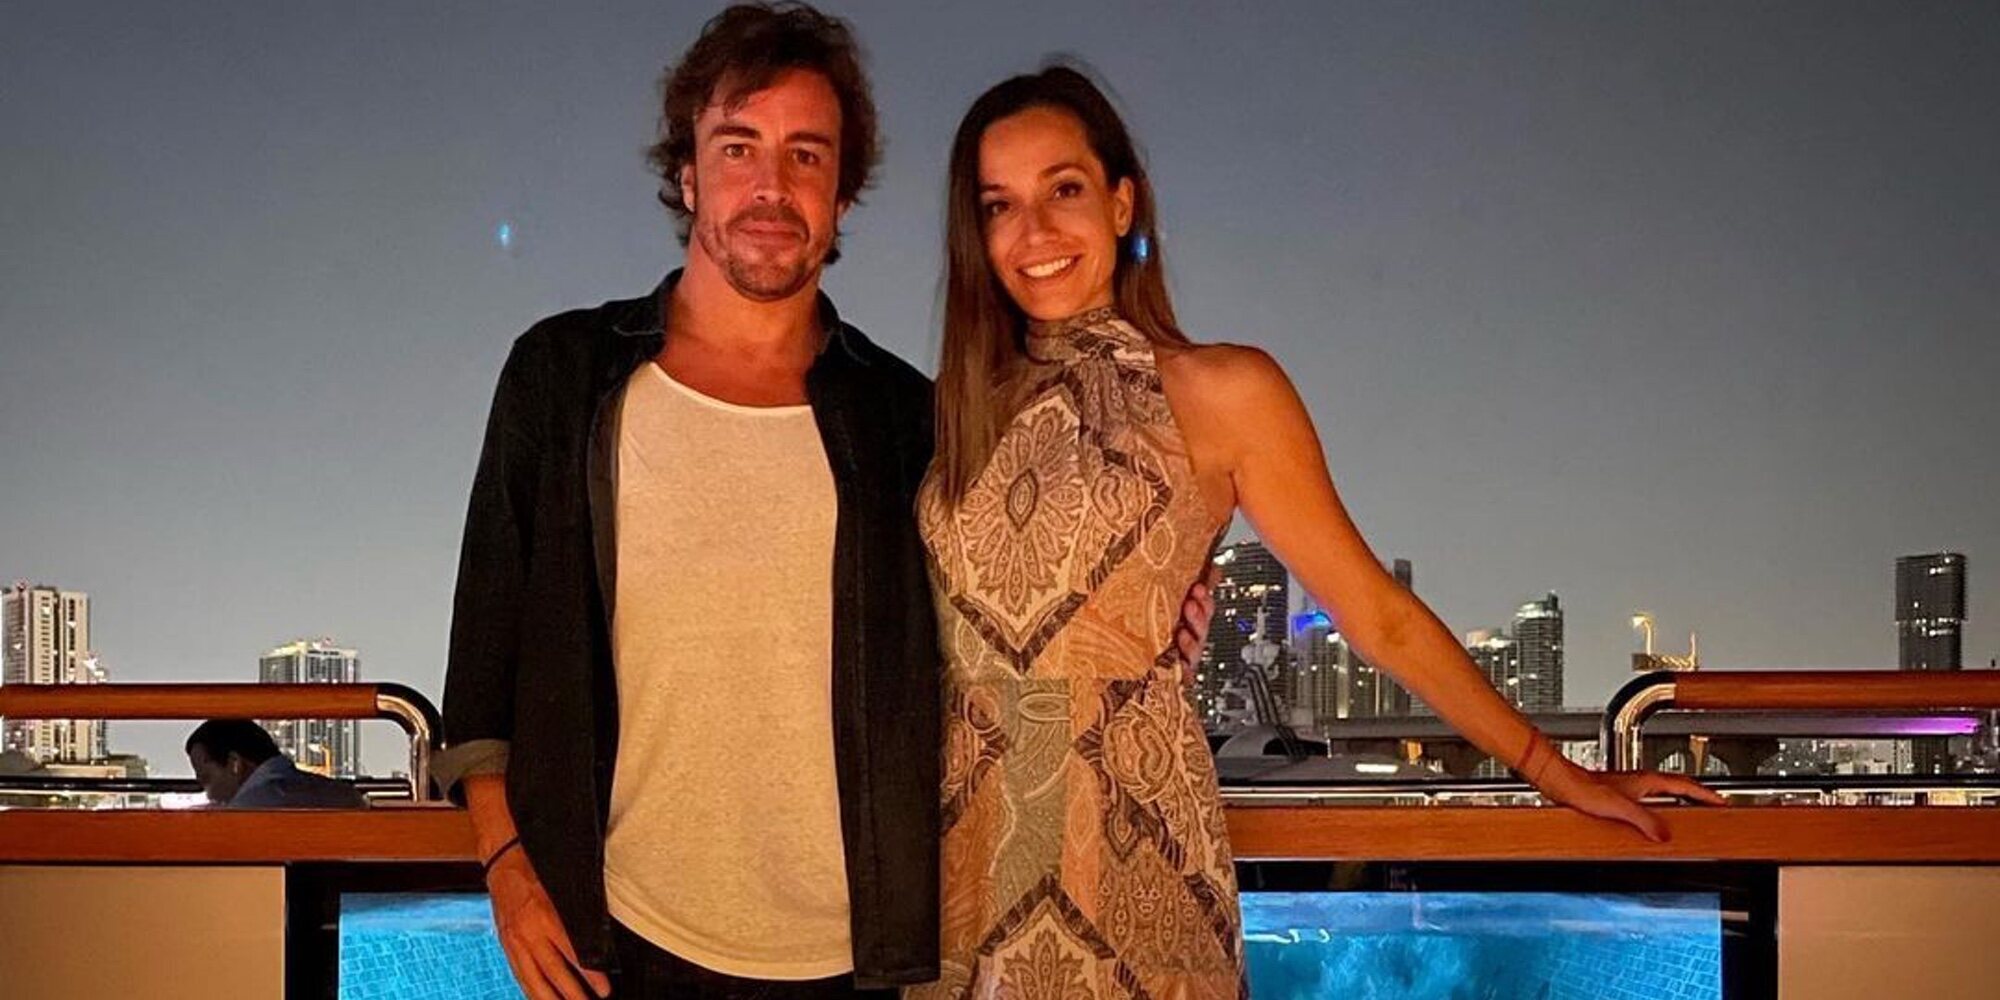 Fernando Alonso y Andrea Schlager hacen oficial su relación